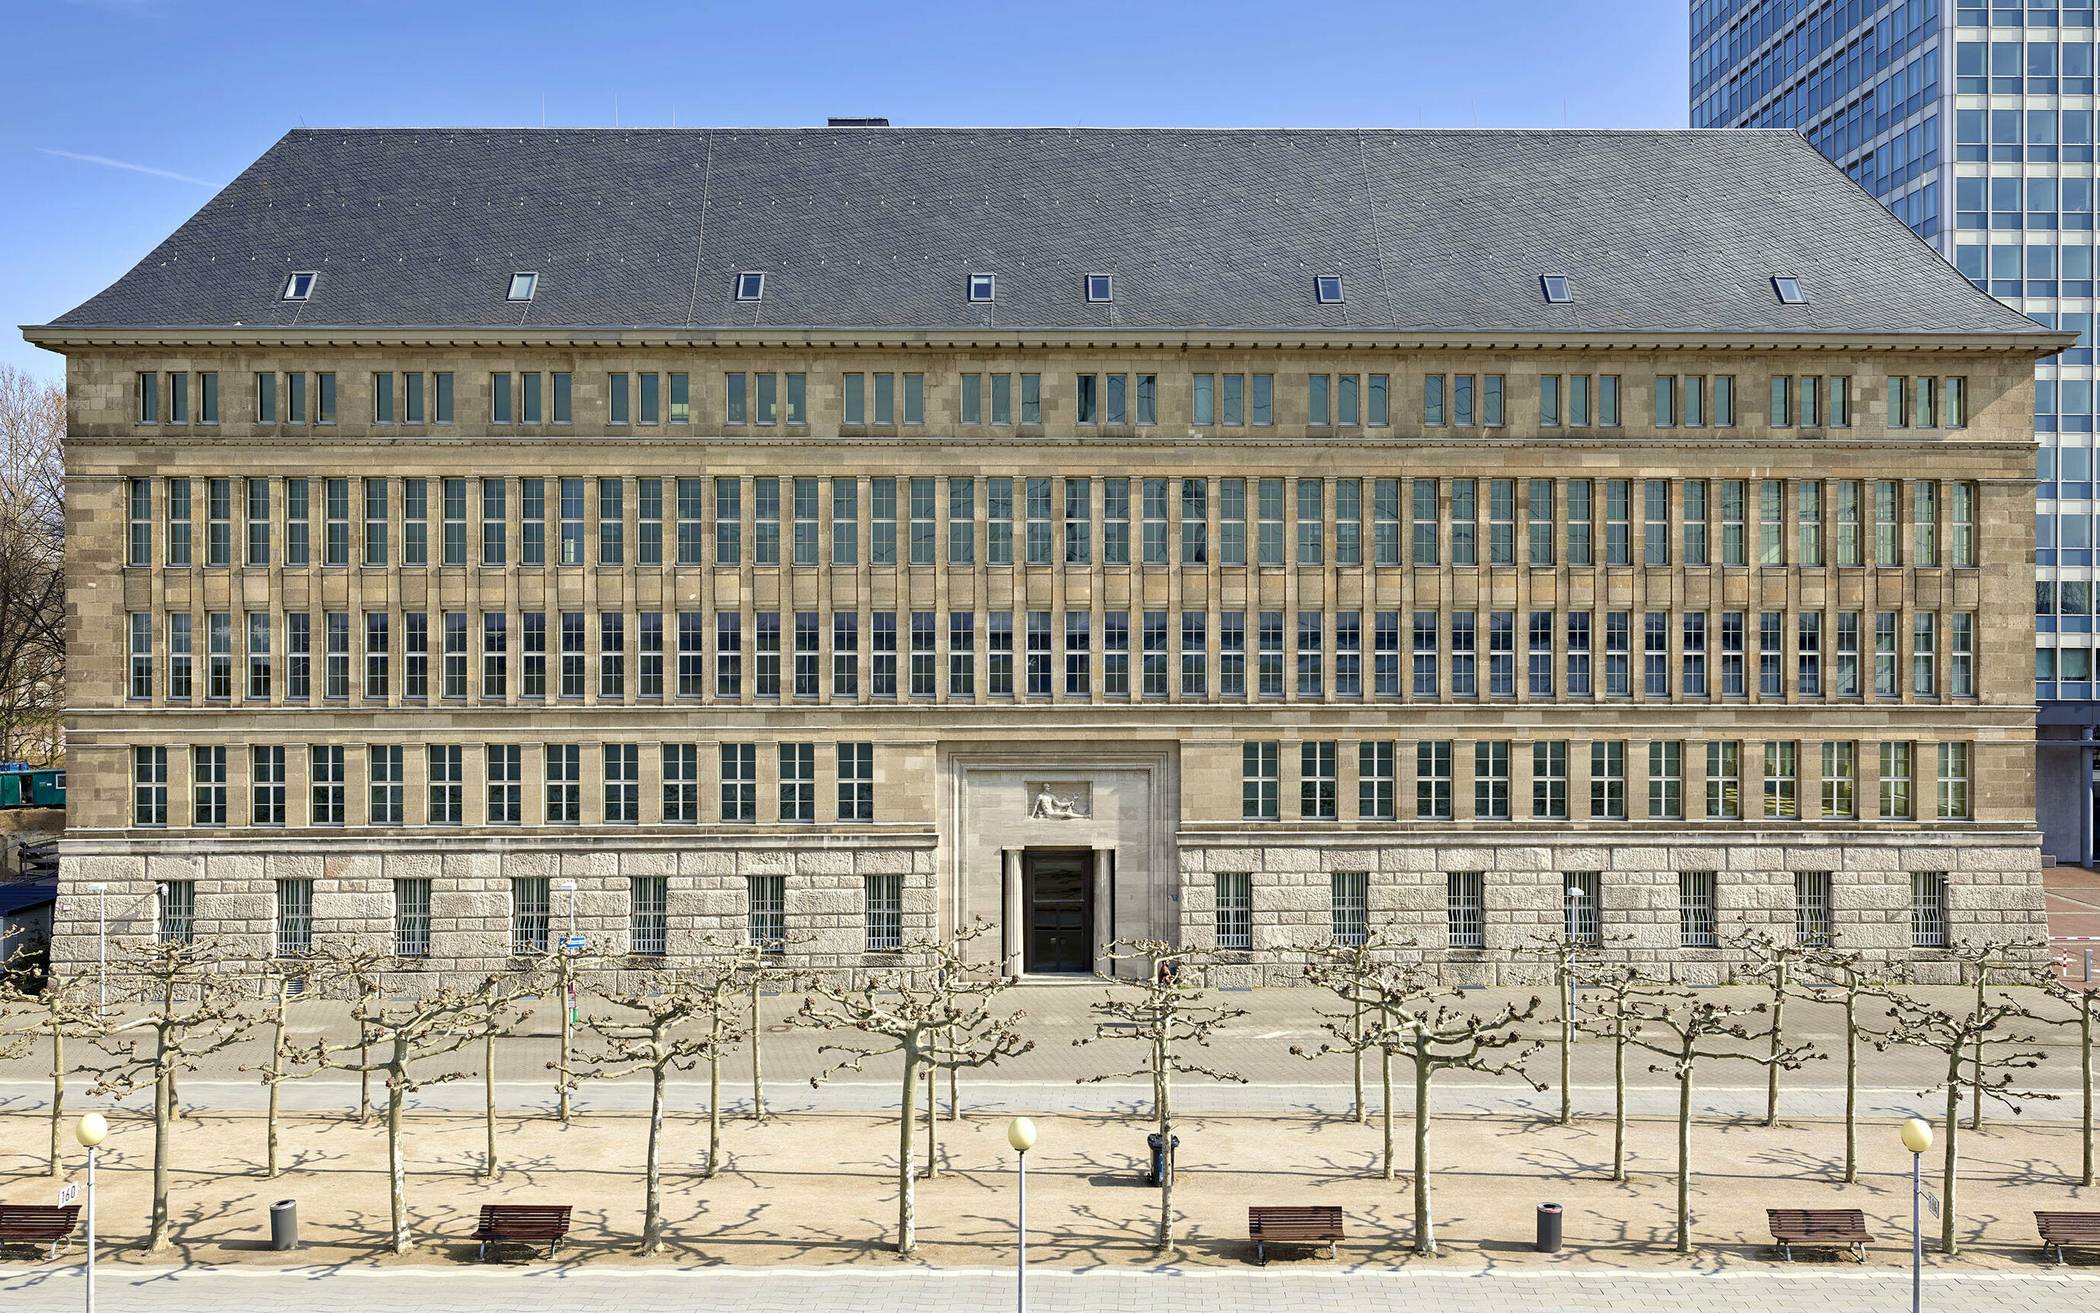  Die Behrensbau-Fassade am Rheinufer. Die Fassade kommt fast ohne Dekoration aus, auffällig ist der Rhythmus der vielen rechteckigen Fenster. 